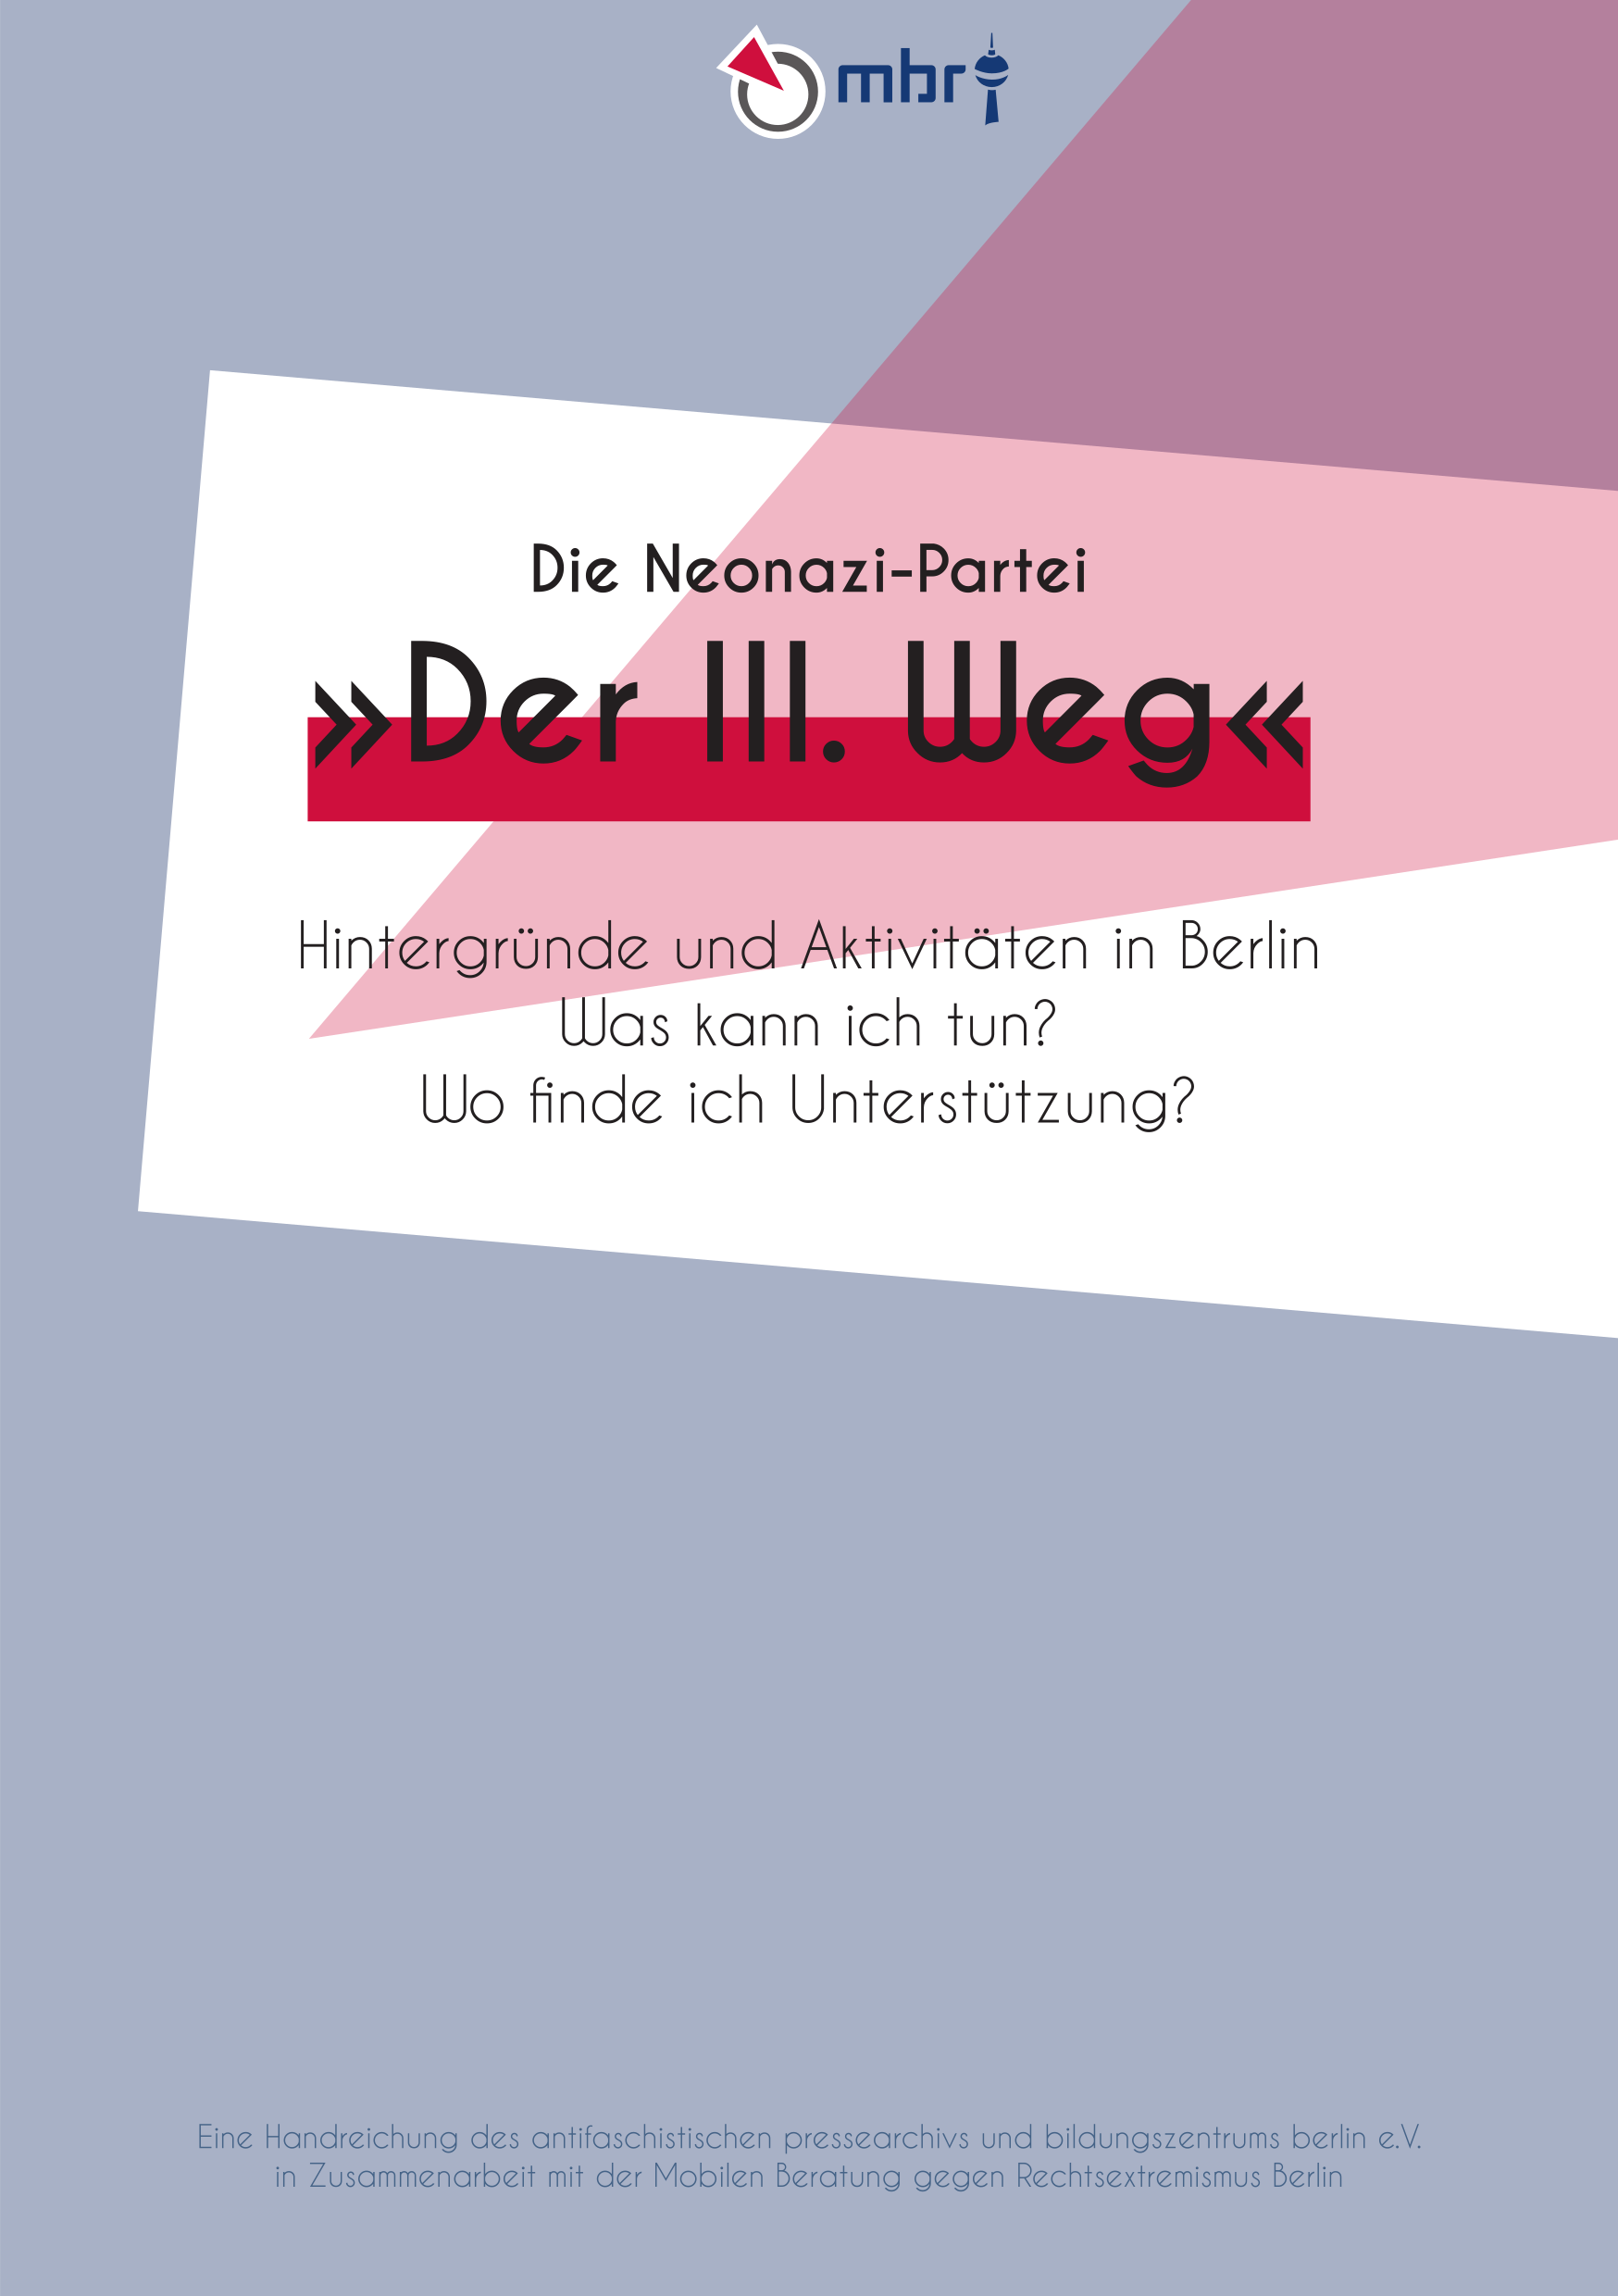 Die Neonazi-Partei "Der III. Weg". Hintergründe und Aktivitäten in Berlin. Was kann ich tun? Wo finde ich Unterstützung?